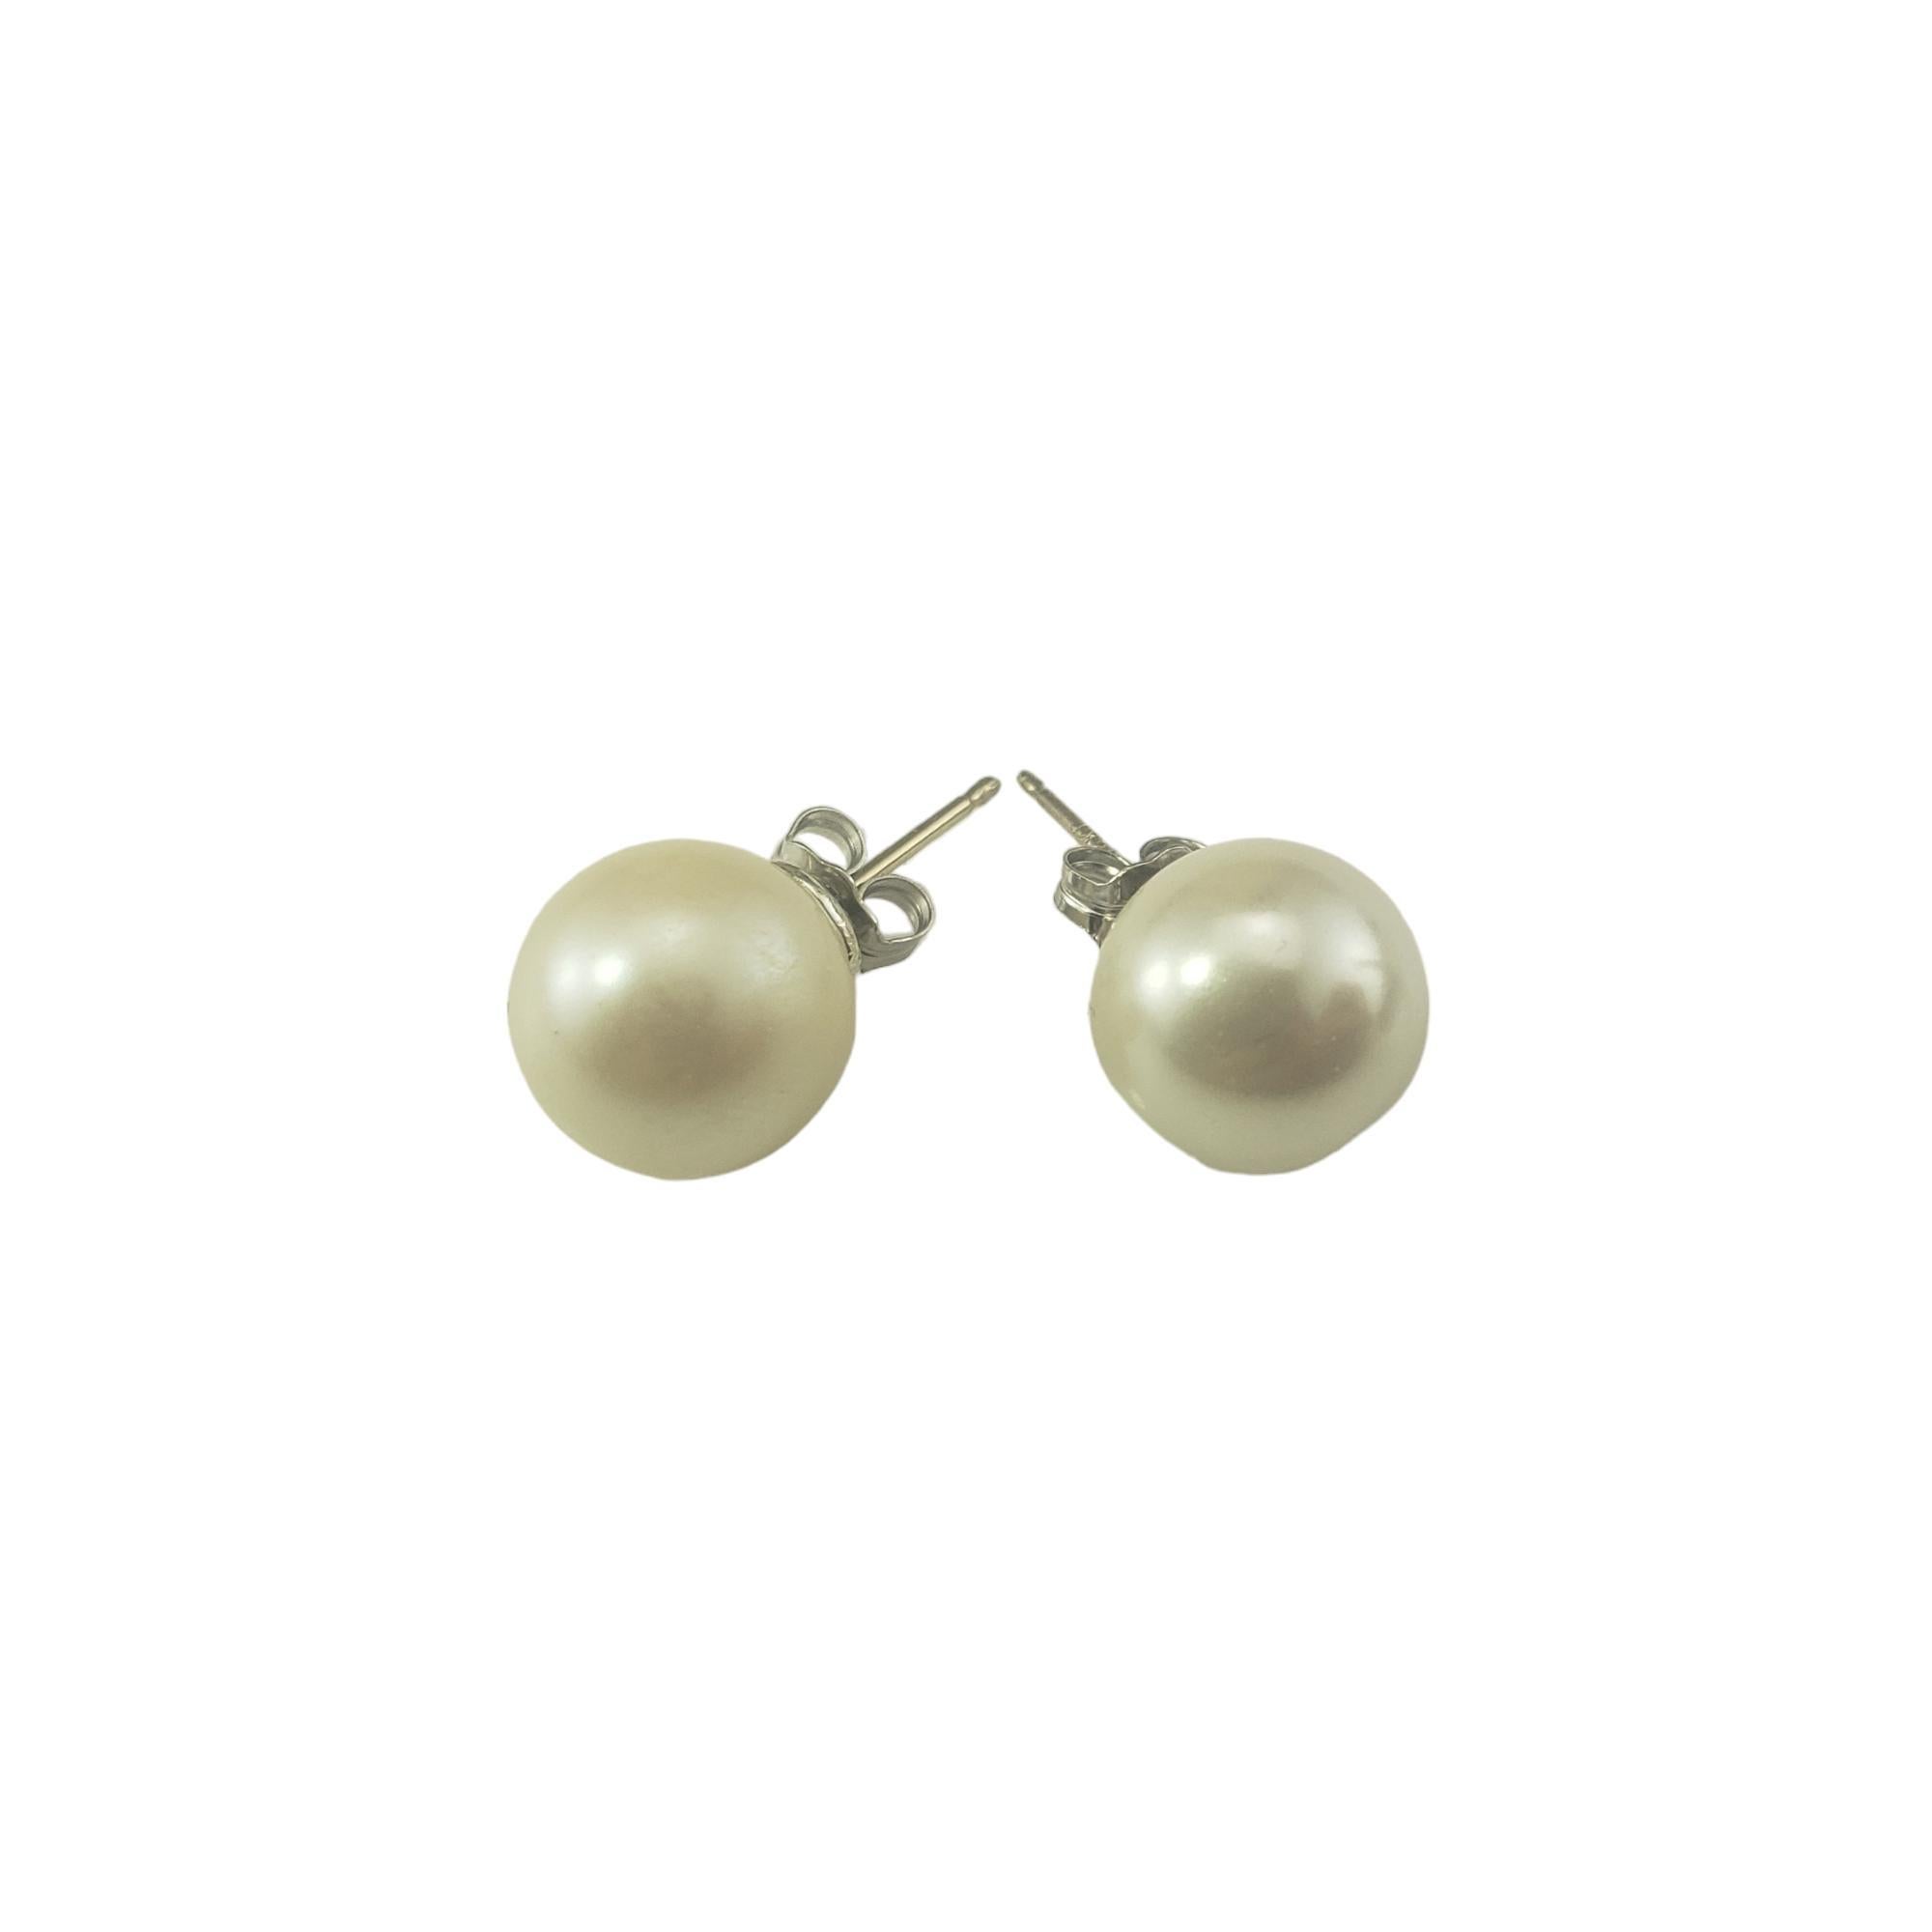 14K Weißgold Perlen-Ohrstecker-

Diese eleganten Ohrstecker bestehen aus je einer runden Perle (10 mm), die in klassisches 14-karätiges Weißgold gefasst ist.  Push-Back-Verschlüsse. 

Größe: 10 mm

Gestempelt: 14KT

Gewicht:  1,5 dwt./ 2,4 gr.

Sehr